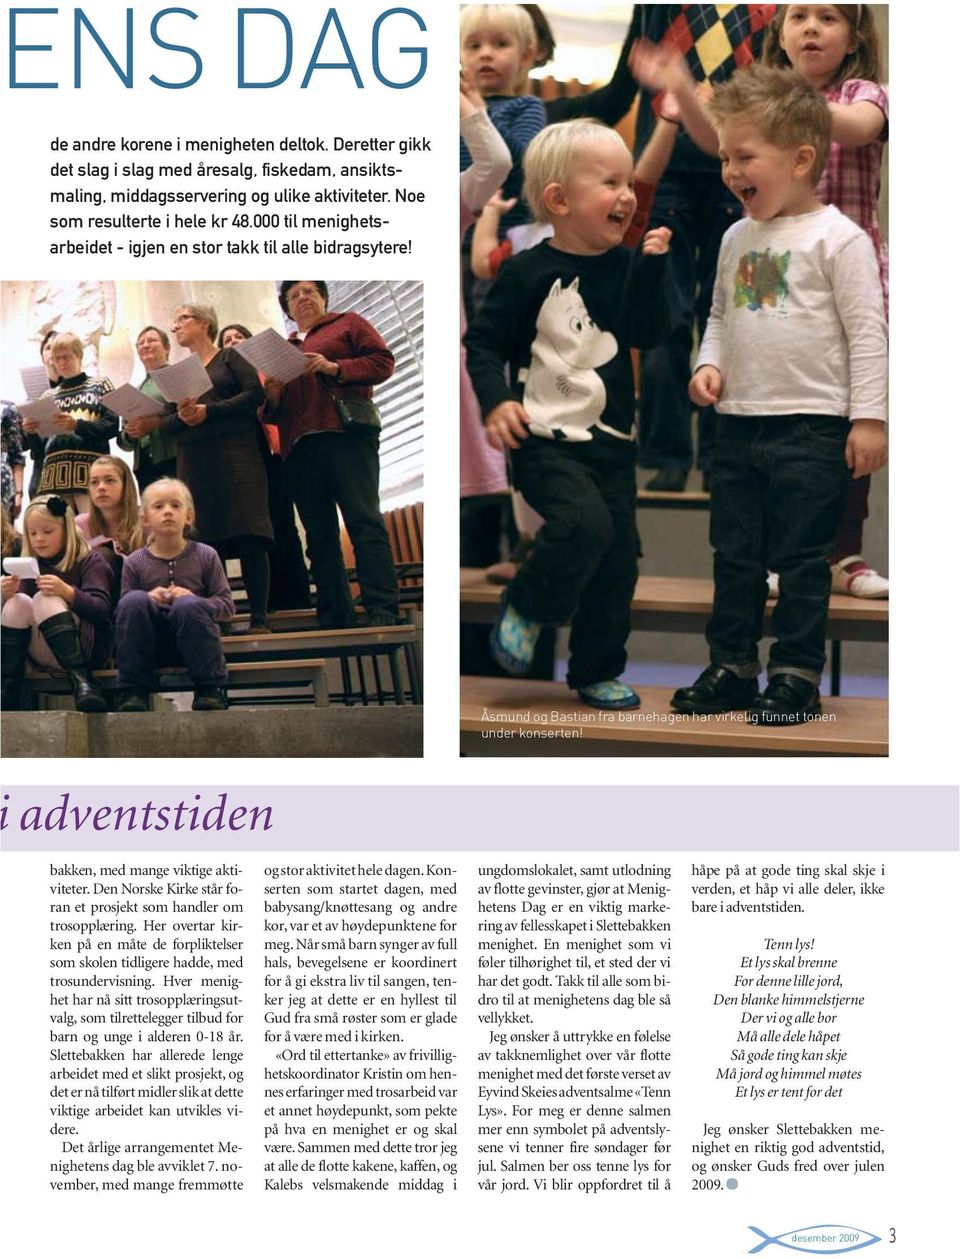 Den Norske Kirke står foran et prosjekt som handler om trosopplæring. Her overtar kirken på en måte de forpliktelser som skolen tidligere hadde, med trosundervisning.